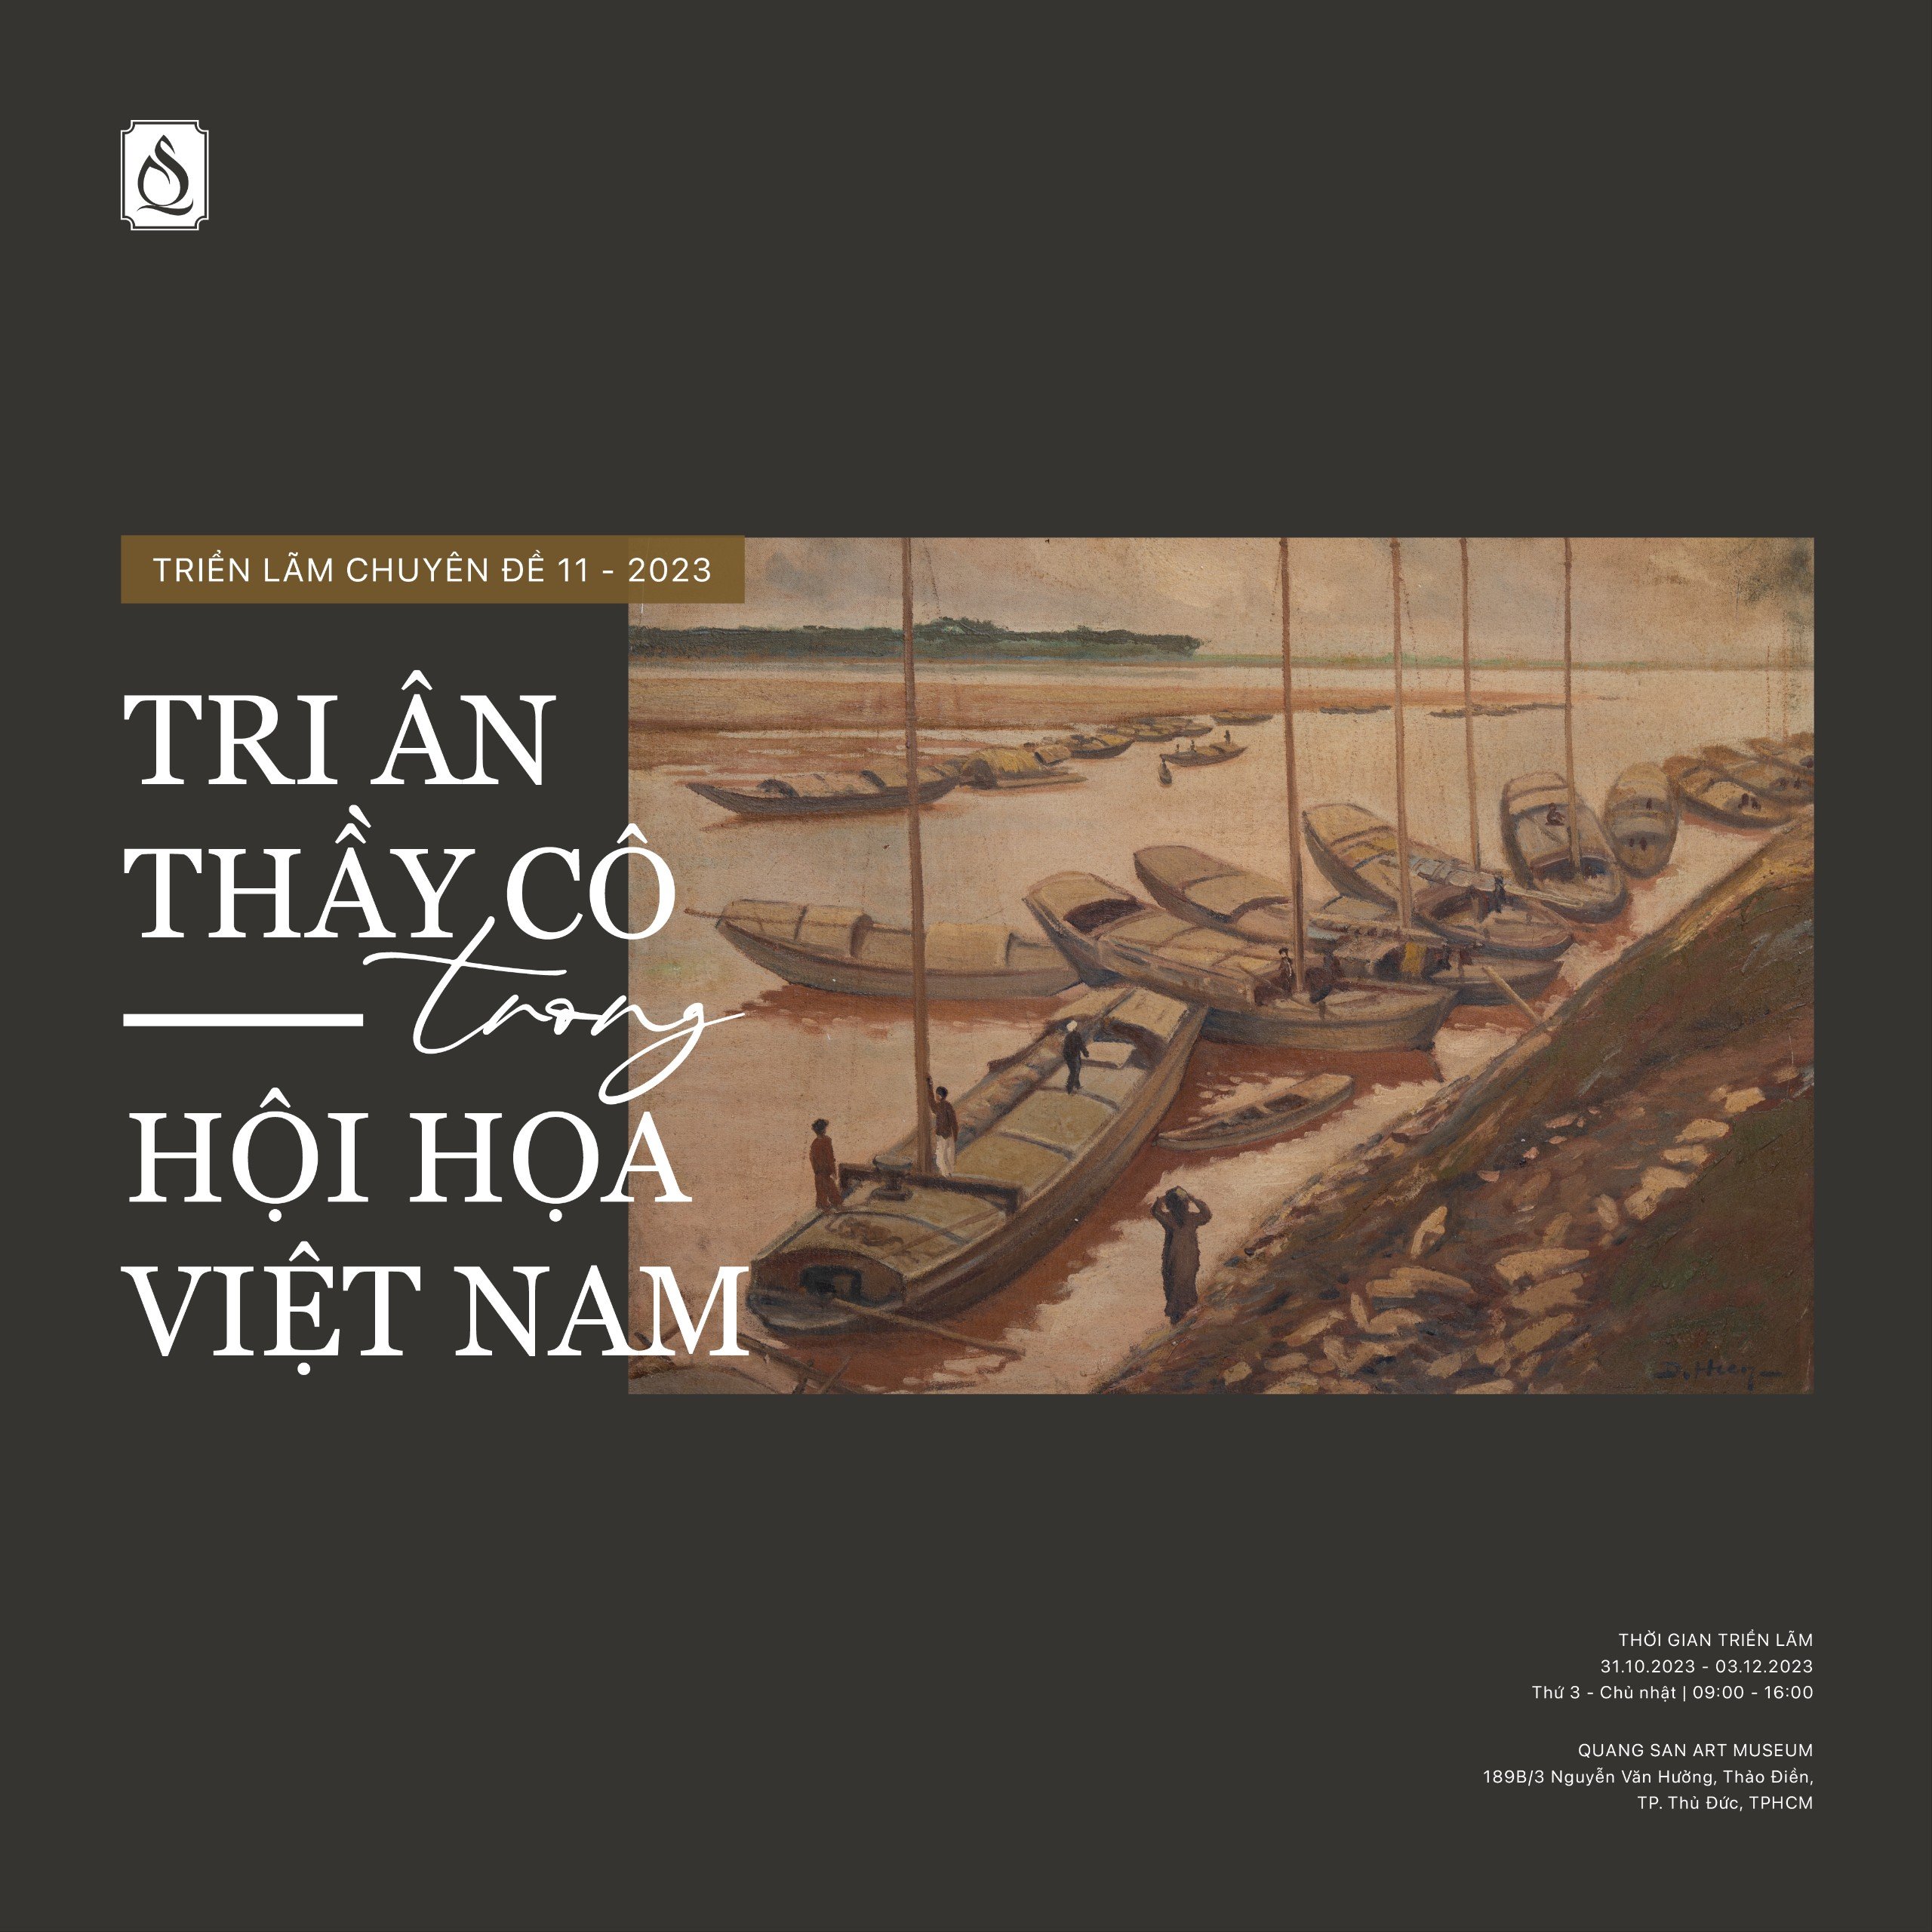 Triển lãm chuyên đề tháng 11/2023 - "TRI ÂN THẦY CÔ TRONG HỘI HỌA VIỆT NAM"